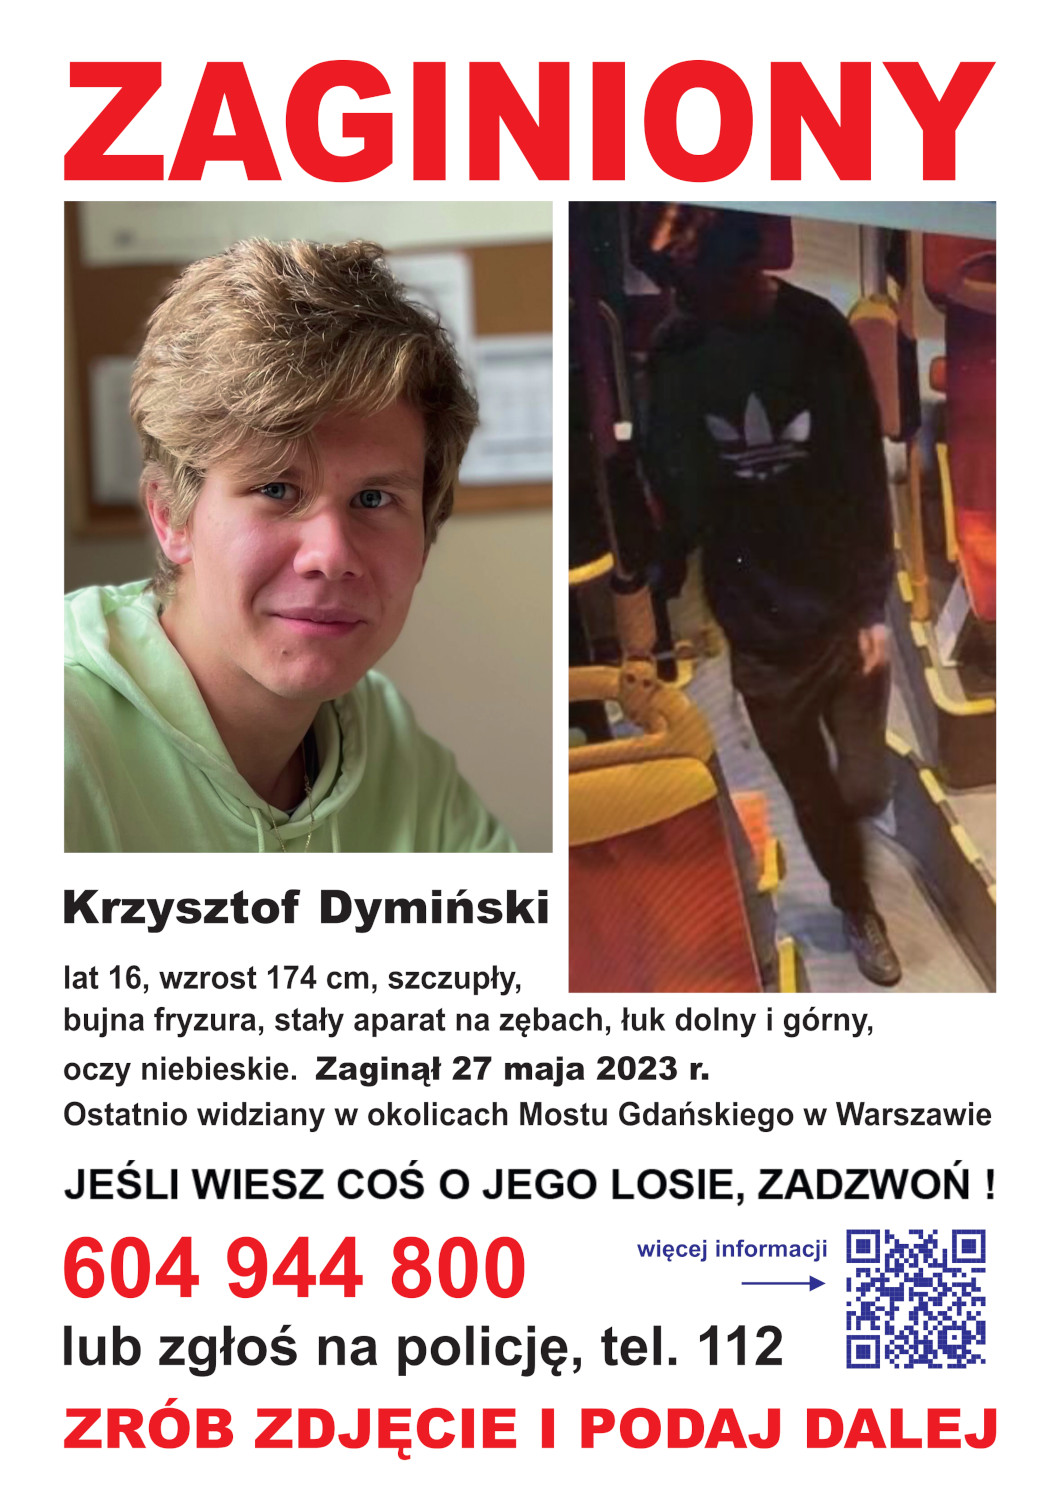 Plakat ze zdjęciem i informacjami o zaginionym